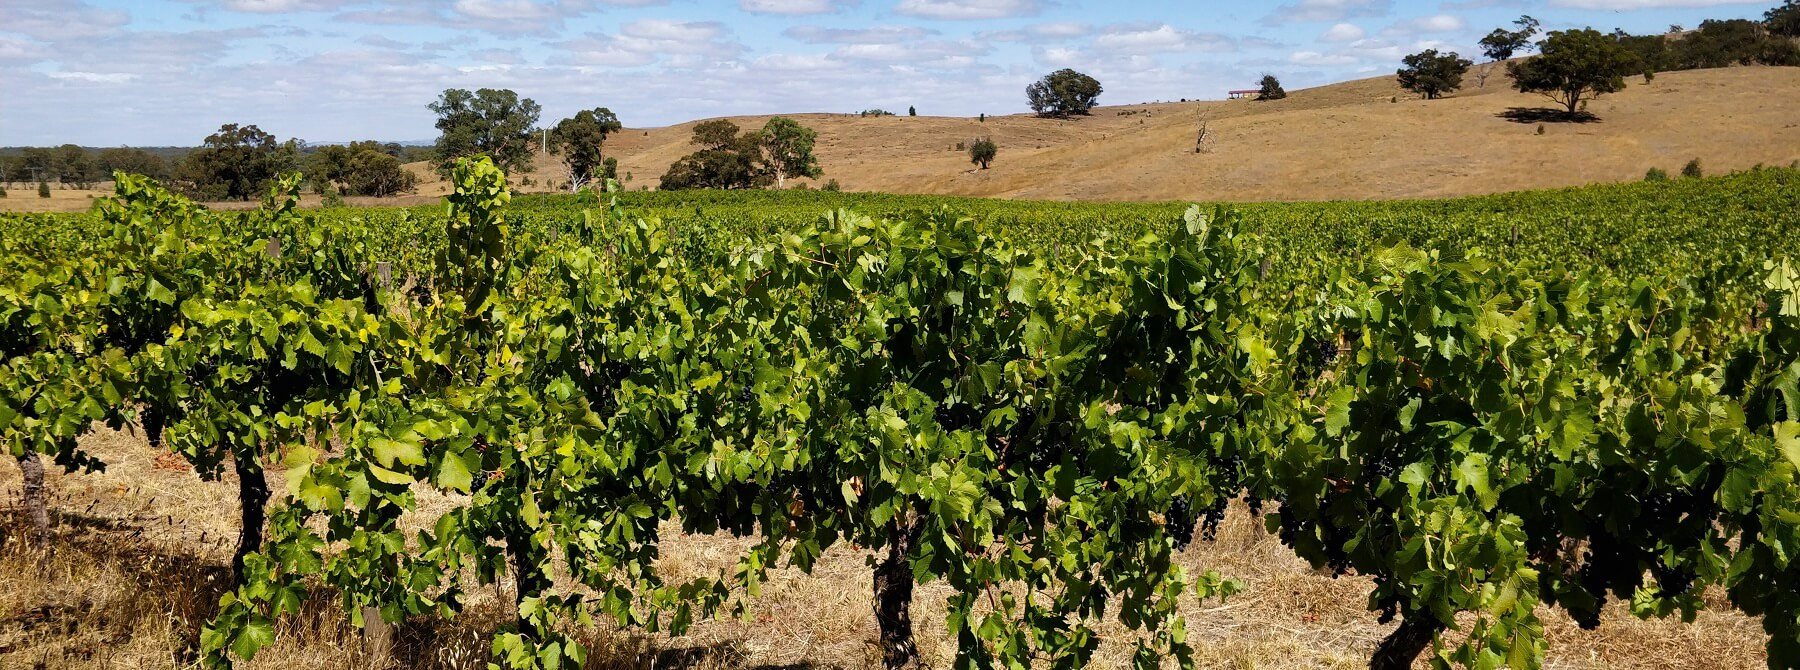 Les vins australiens : un millésime 2019 de qualité